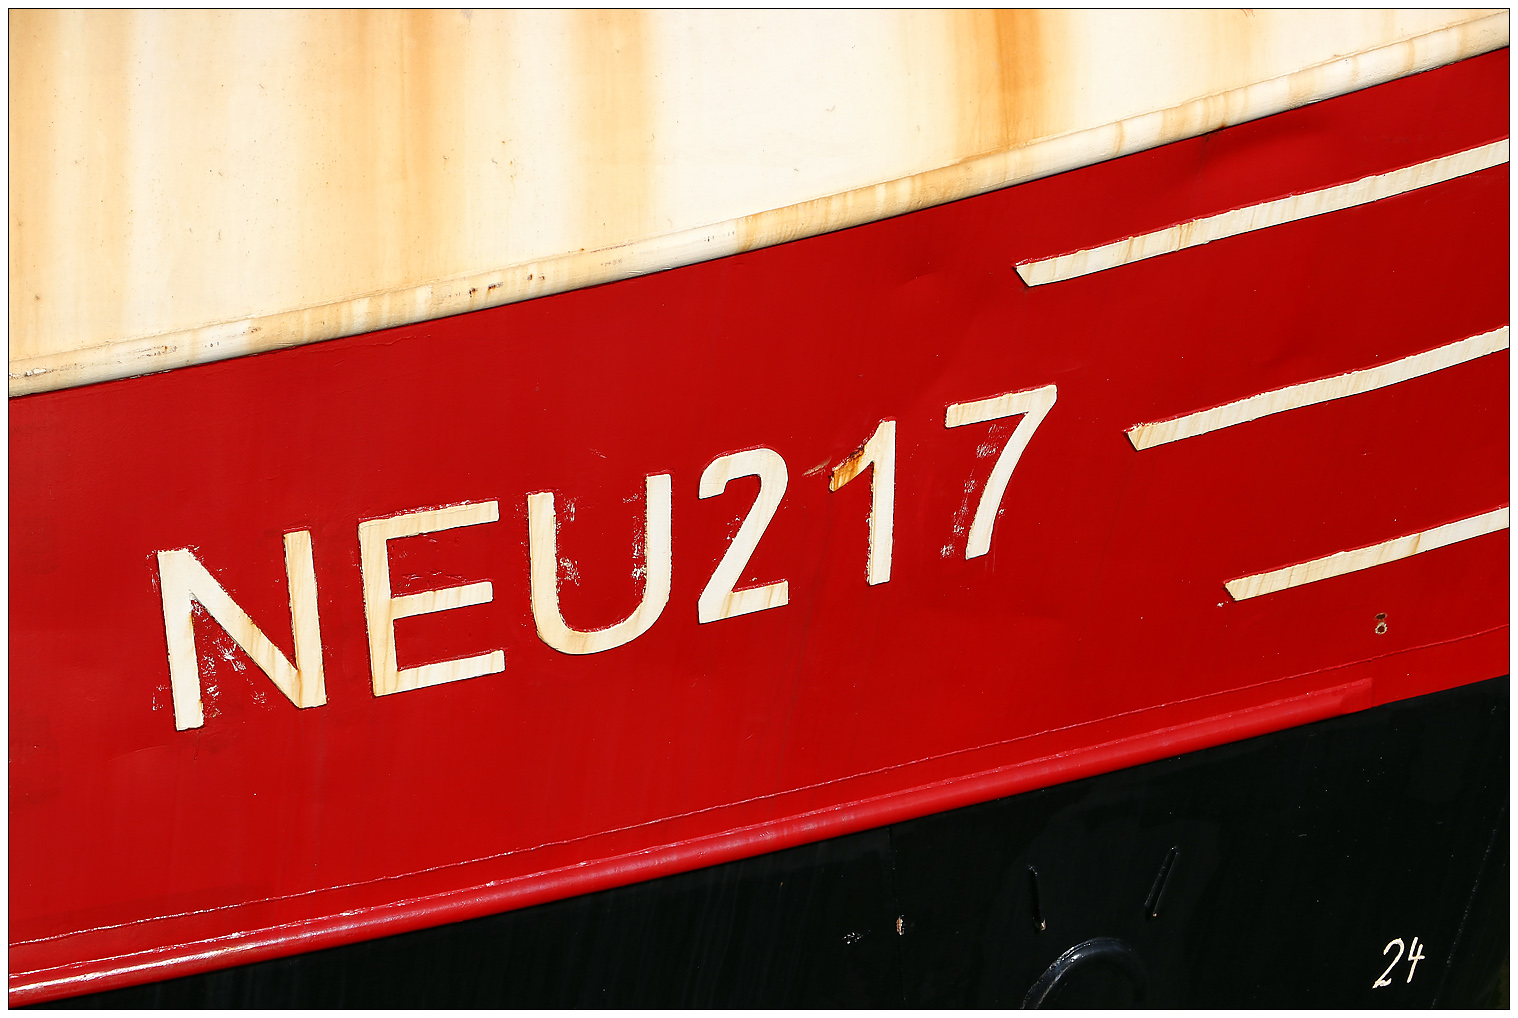 "NEU 217"